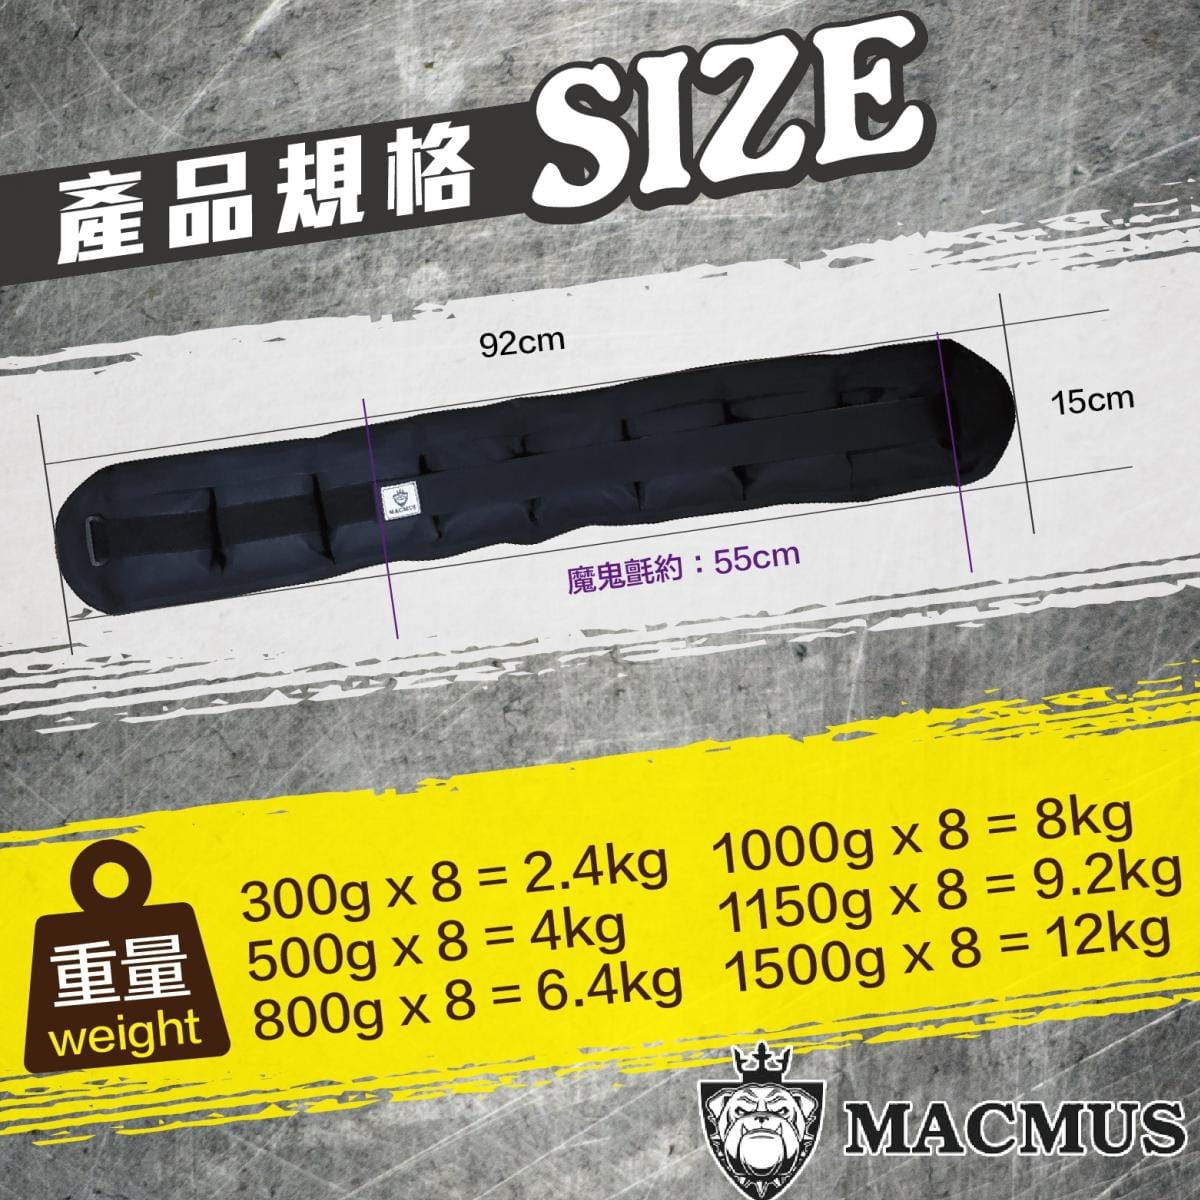 【MACMUS】2.4公斤負重腰帶｜8格式可調整重訓腰帶｜強化核心肌群鍛鍊腰部肌肉 1